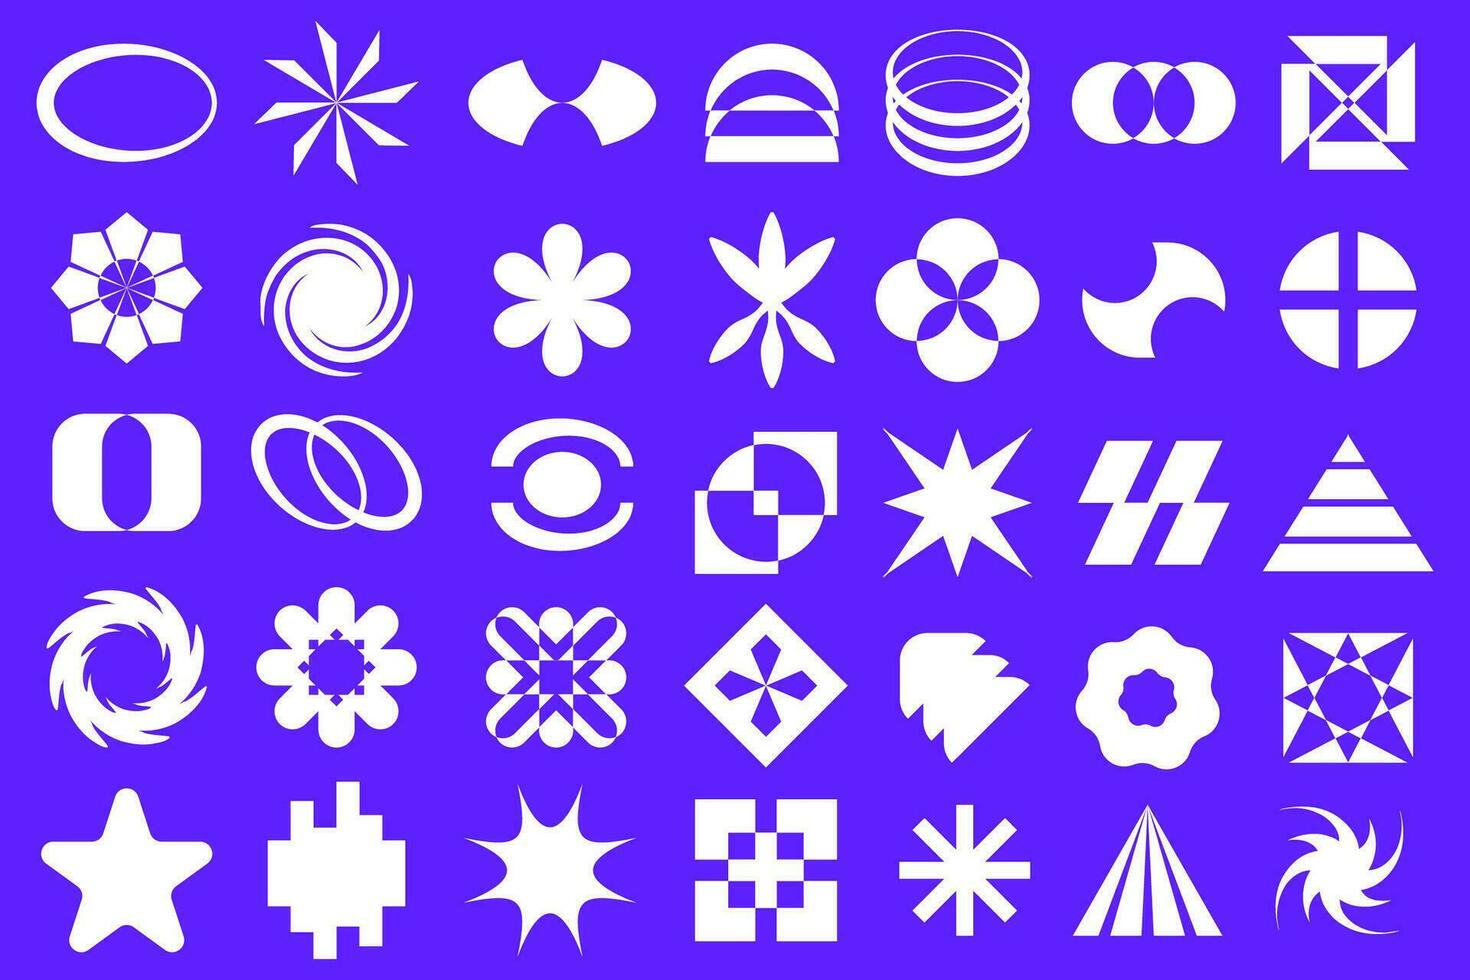 y2k retro futuristische elementen voor ontwerp. verzameling van abstract grafisch meetkundig symbolen. Sjablonen voor straatkleding. vector illustratie